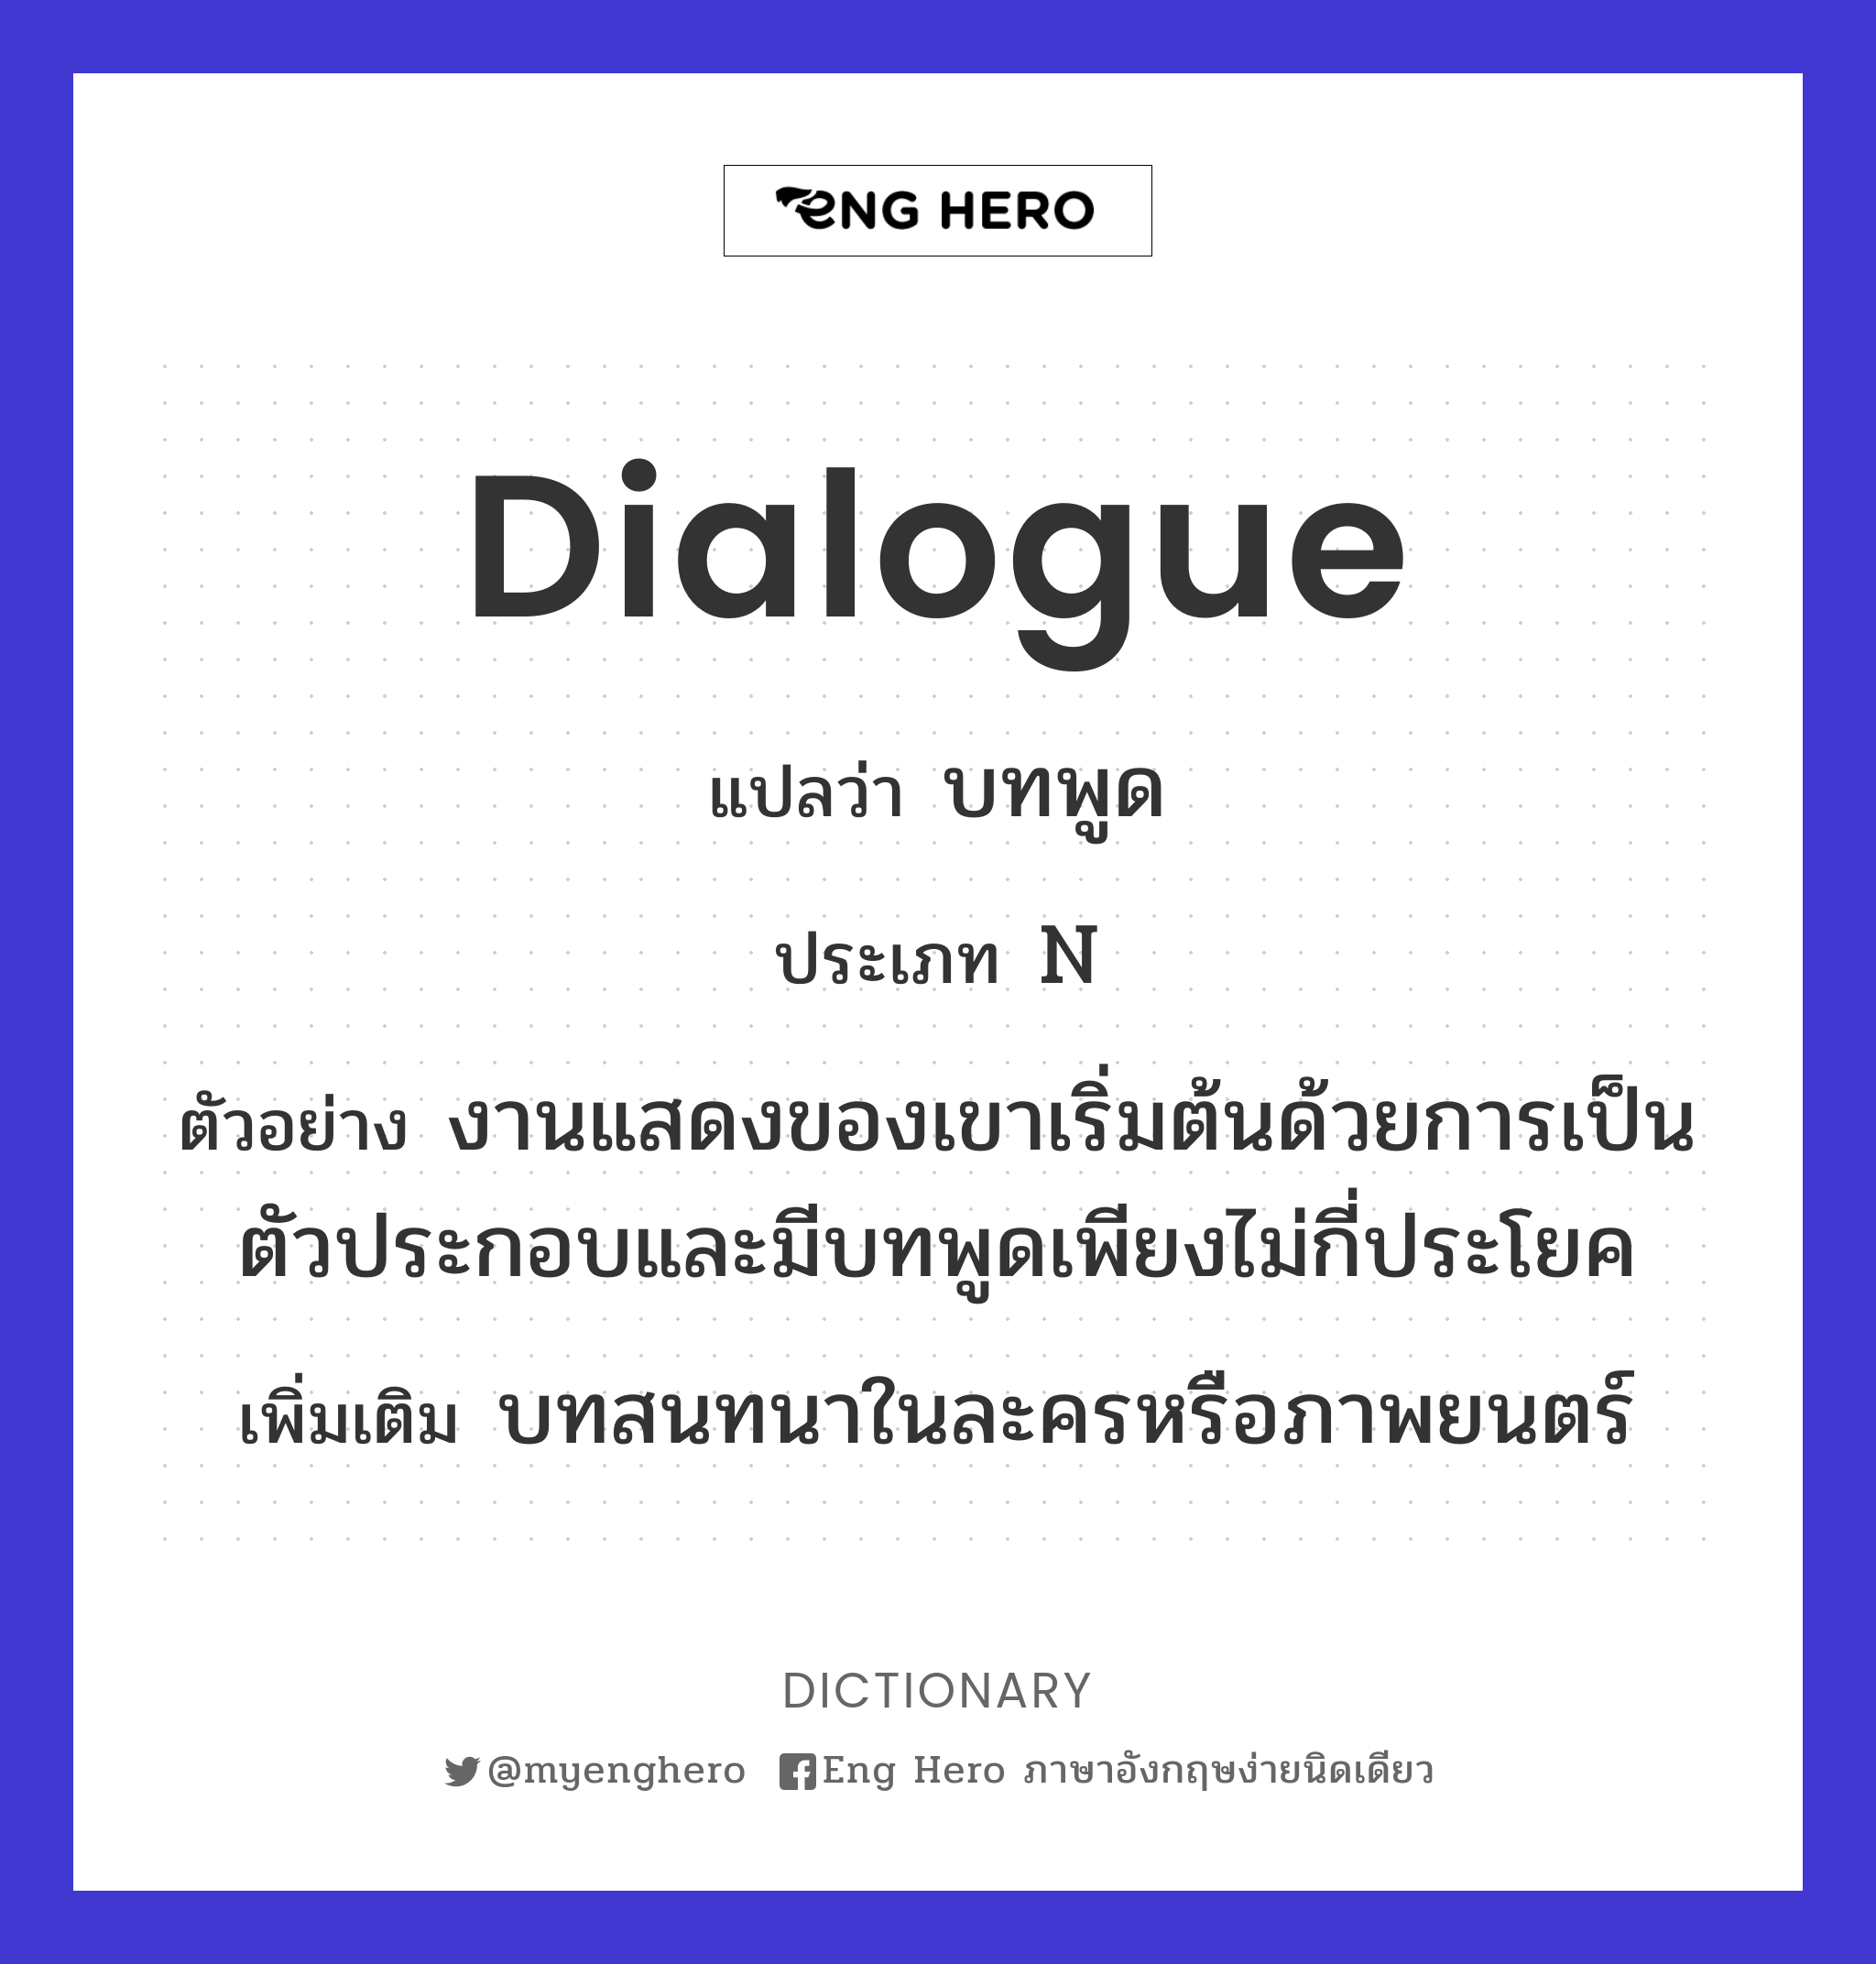 dialogue